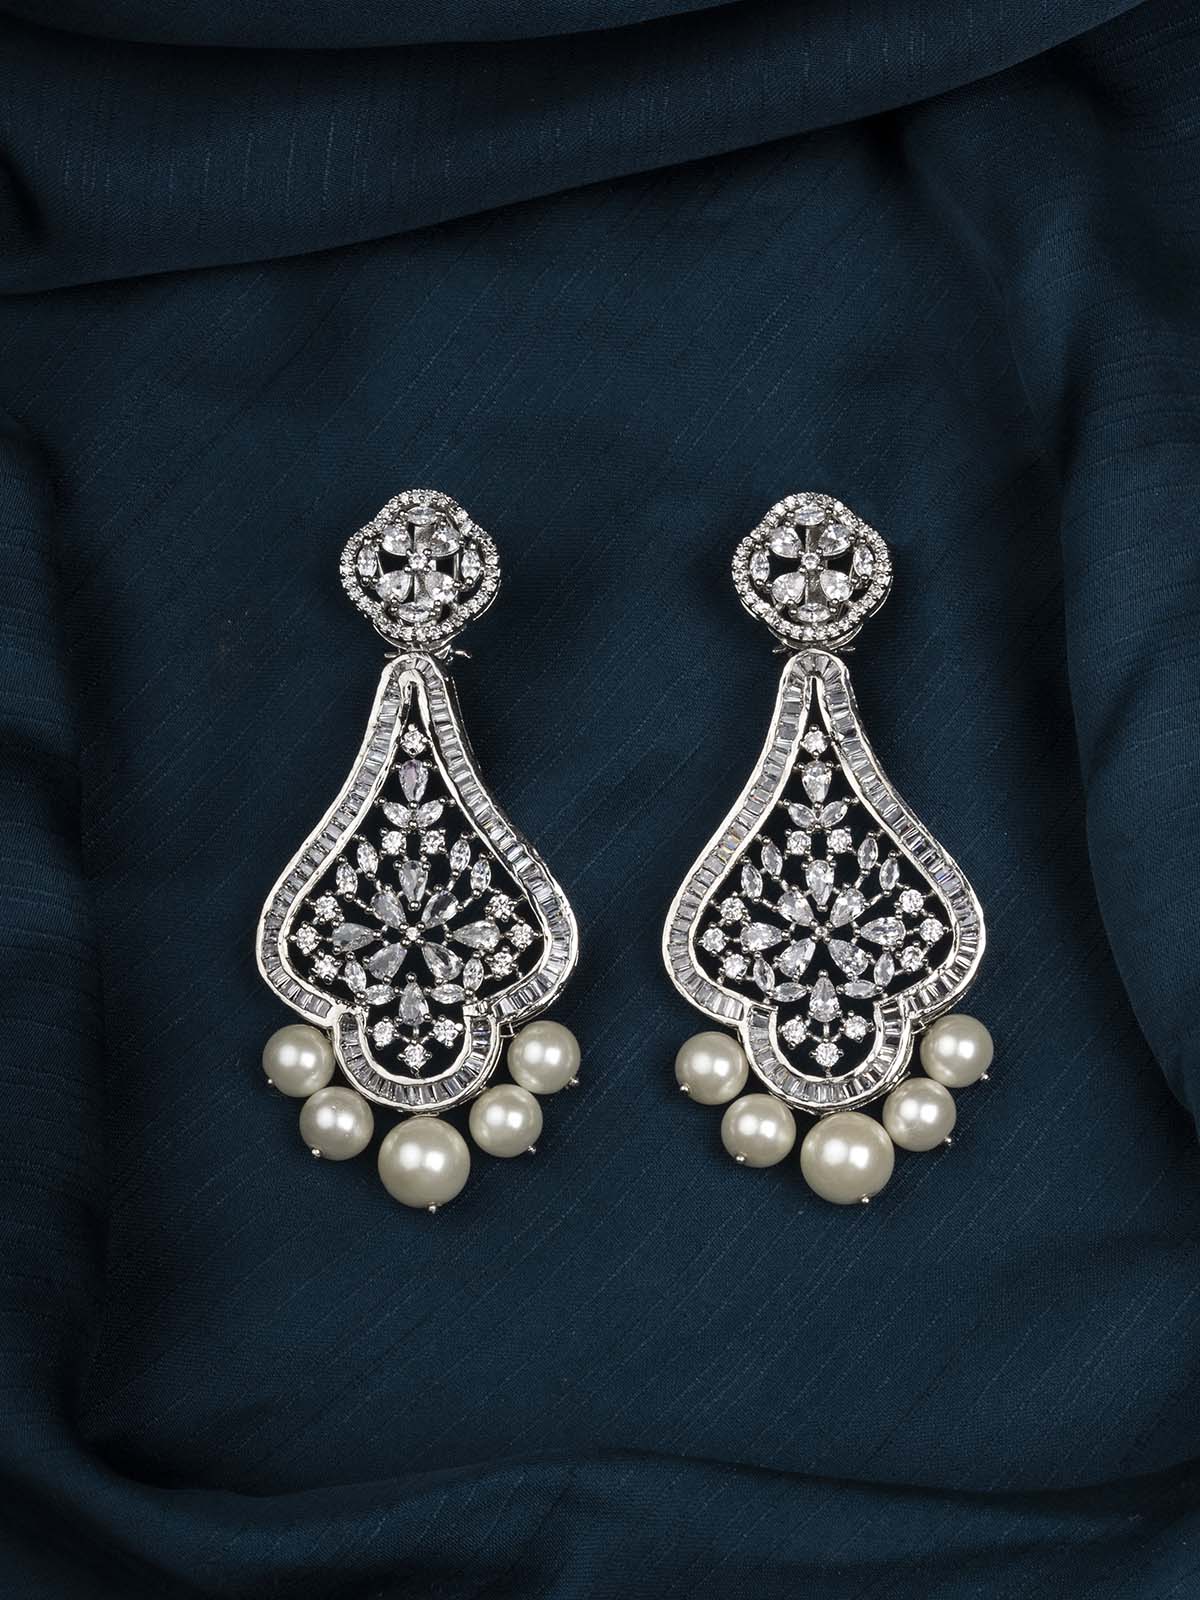 CZEAR518 - Silver Plated Faux Diamond Earrings